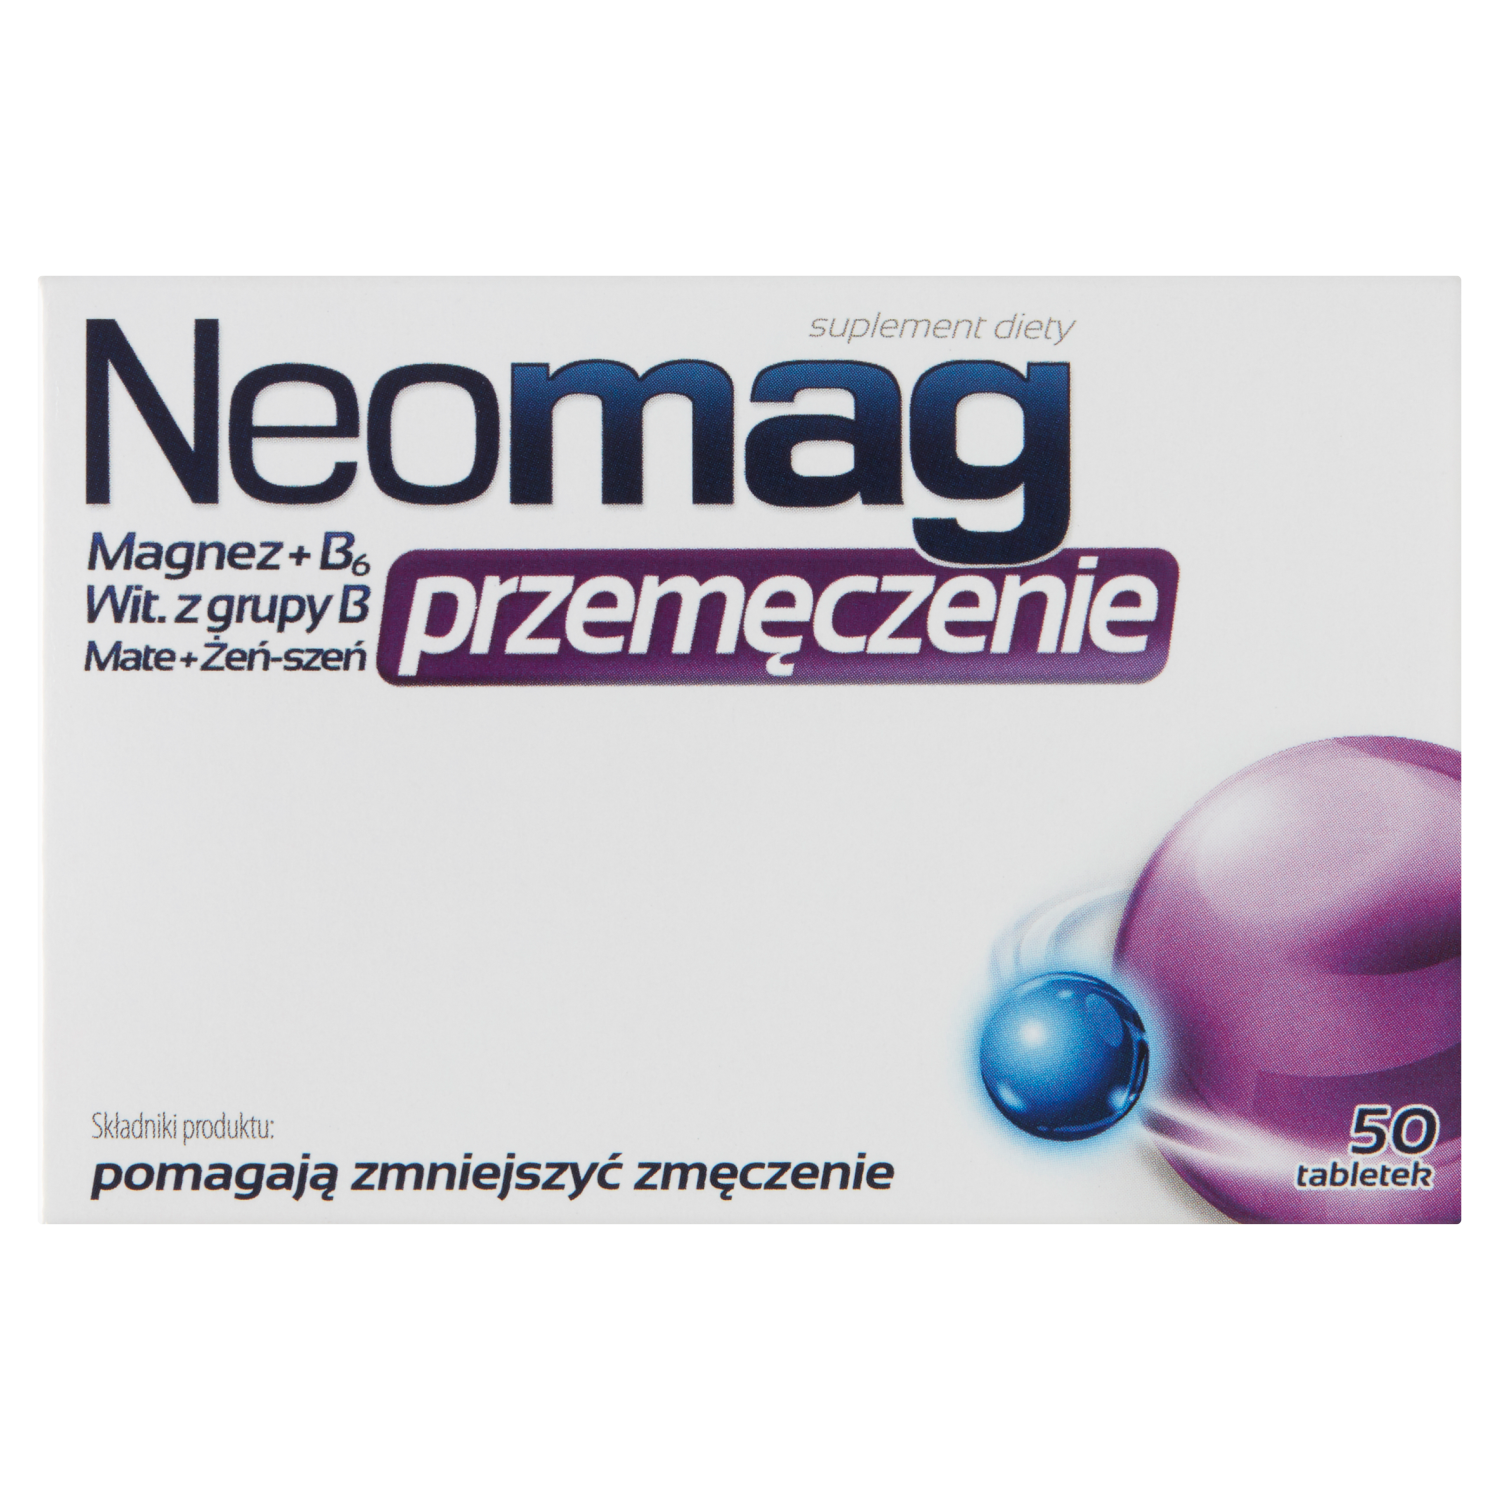 sesja биологически активная добавка 50 таблеток 1 упаковка Neomag Przemęczenie биологически активная добавка, 50 таблеток/1 упаковка